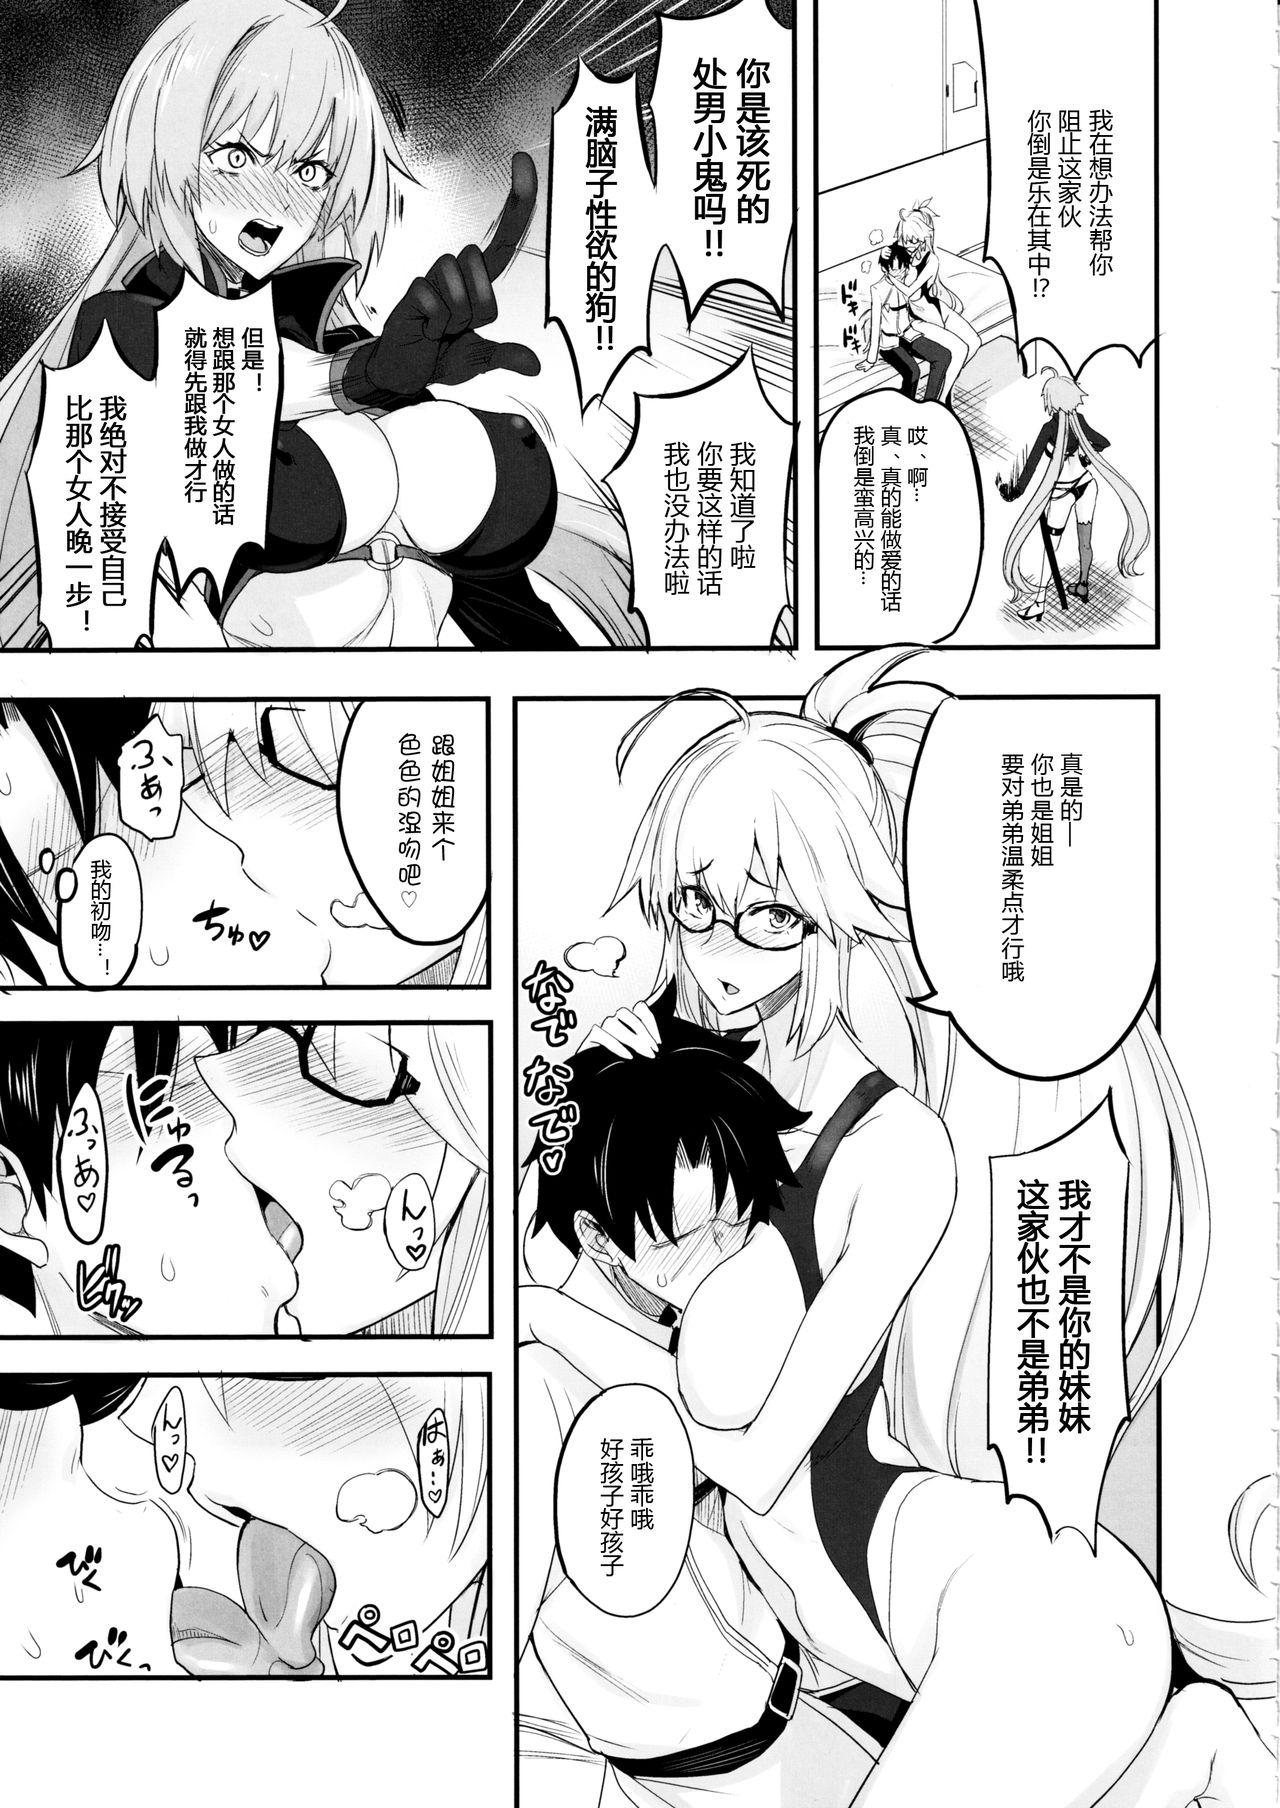 Putita W Jeanne vs Master - Fate grand order Ecchi - Page 5